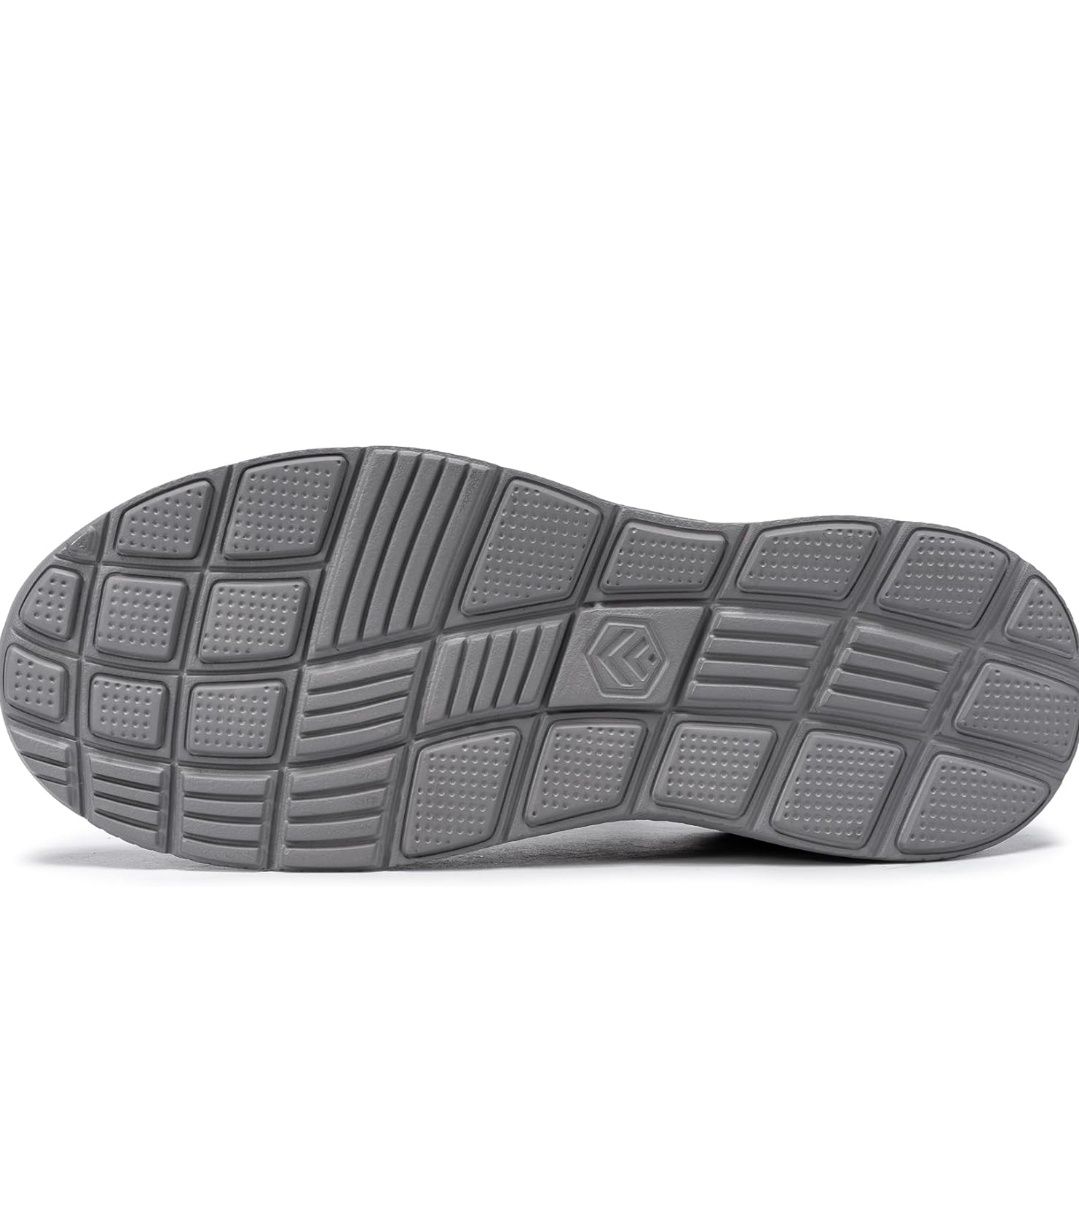 Pantofi sport/ Adidasi Flowing Plume, Waterproff, noi, m 47